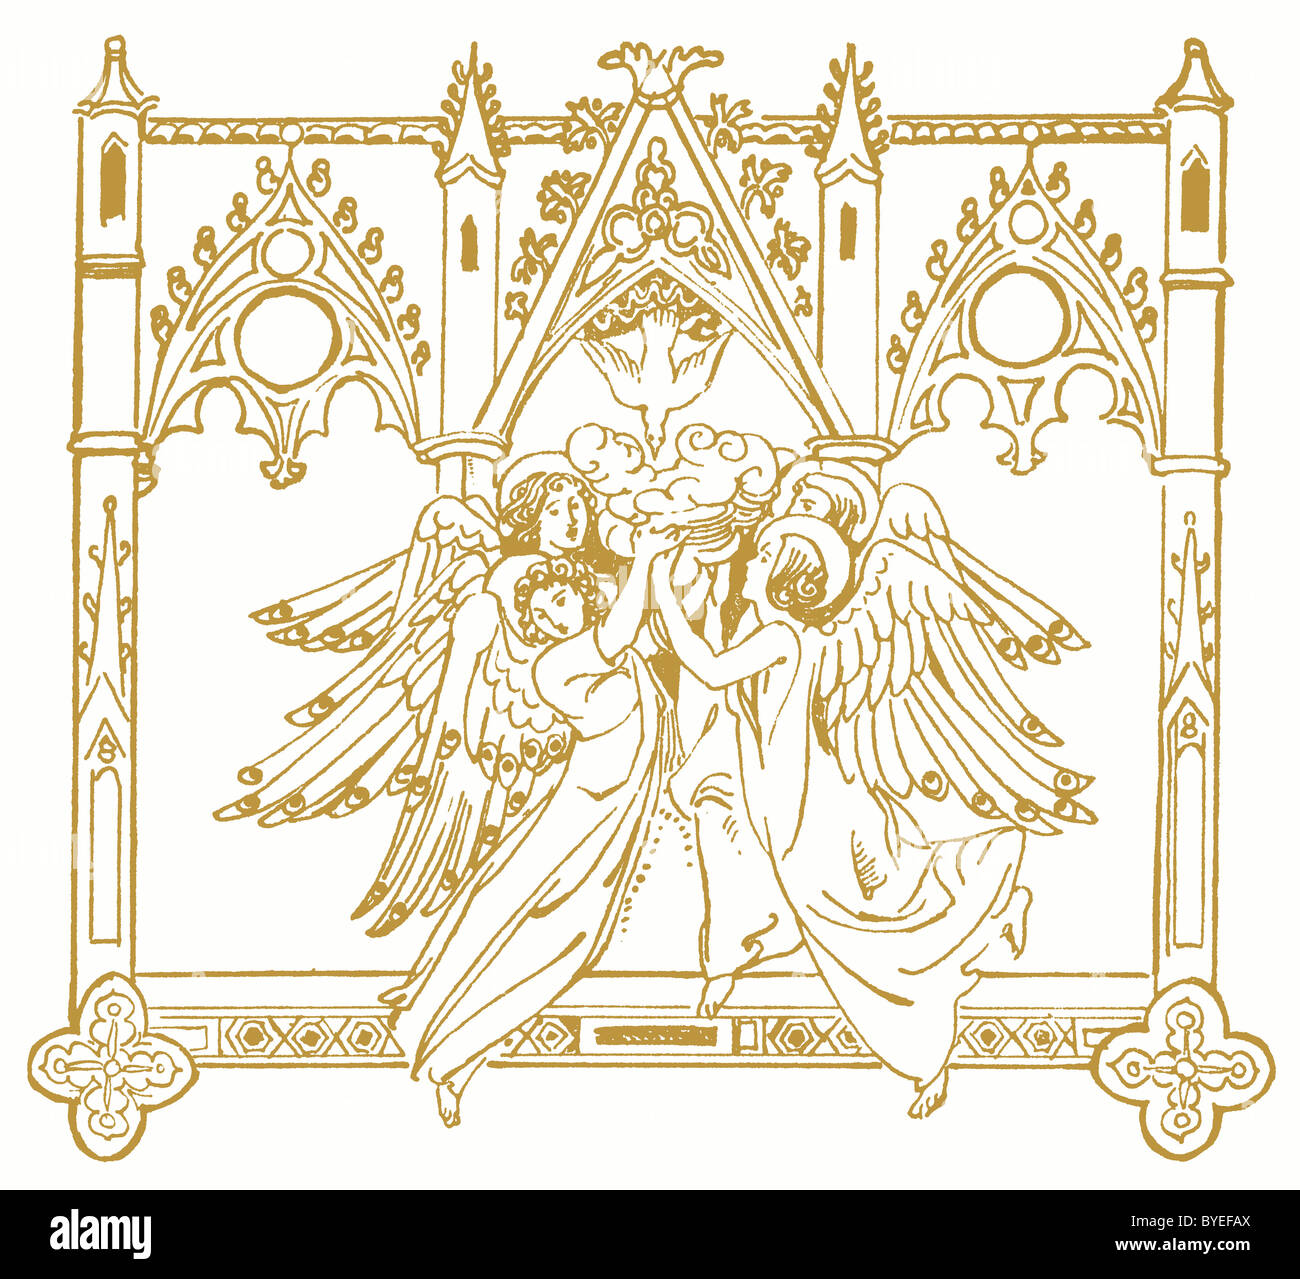 1910 mouvement arts and crafts - Spirit of Angels de la paix - gothic revival Banque D'Images